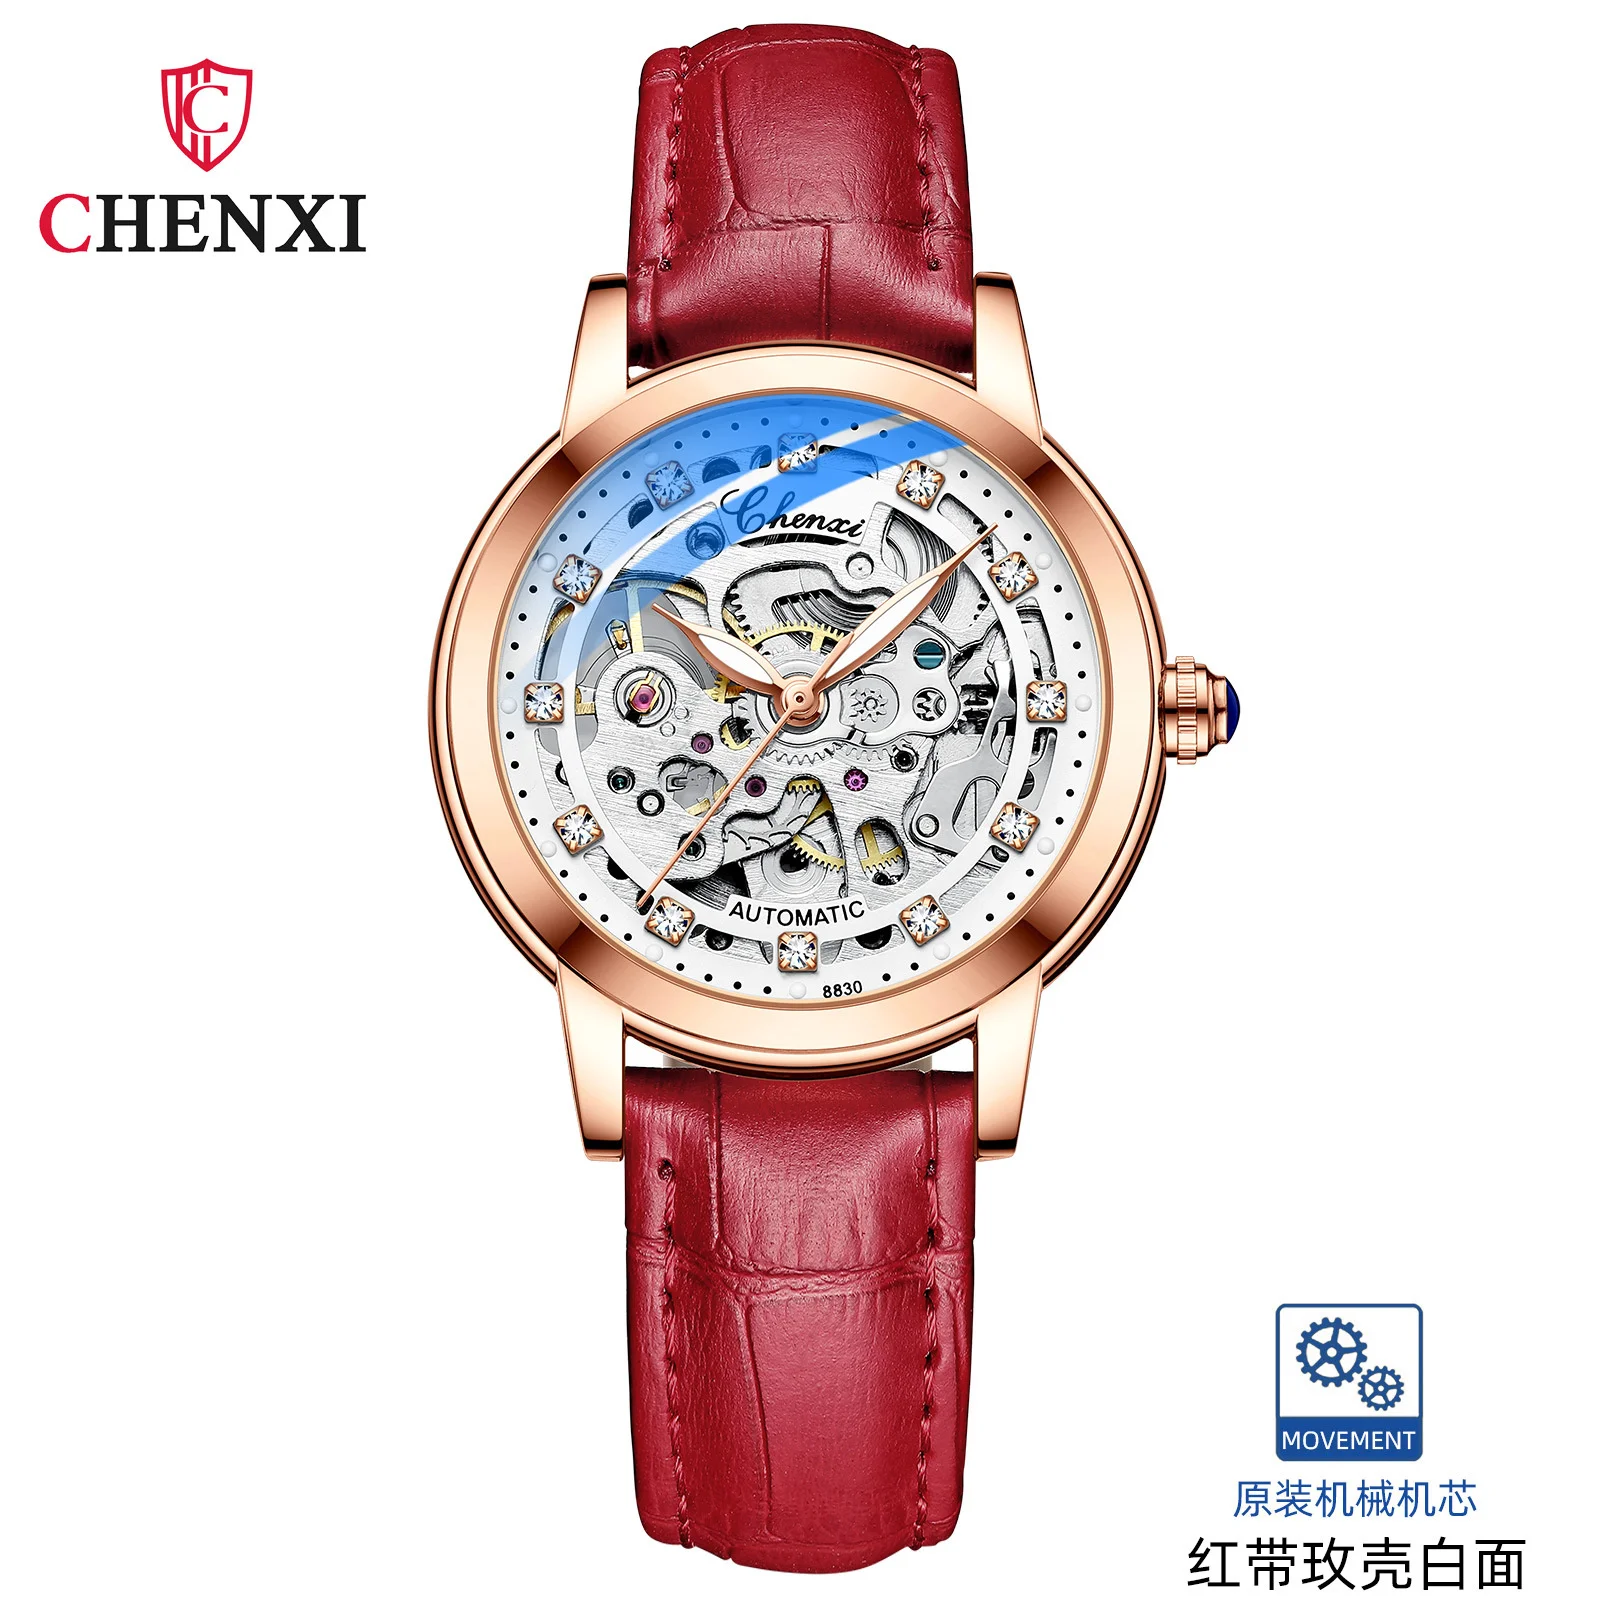 

CHENXI 8830 Leather New Lady Fashion Diamond Lined Waterproof Automatic Hollowed Mechanical Vibrato Watch